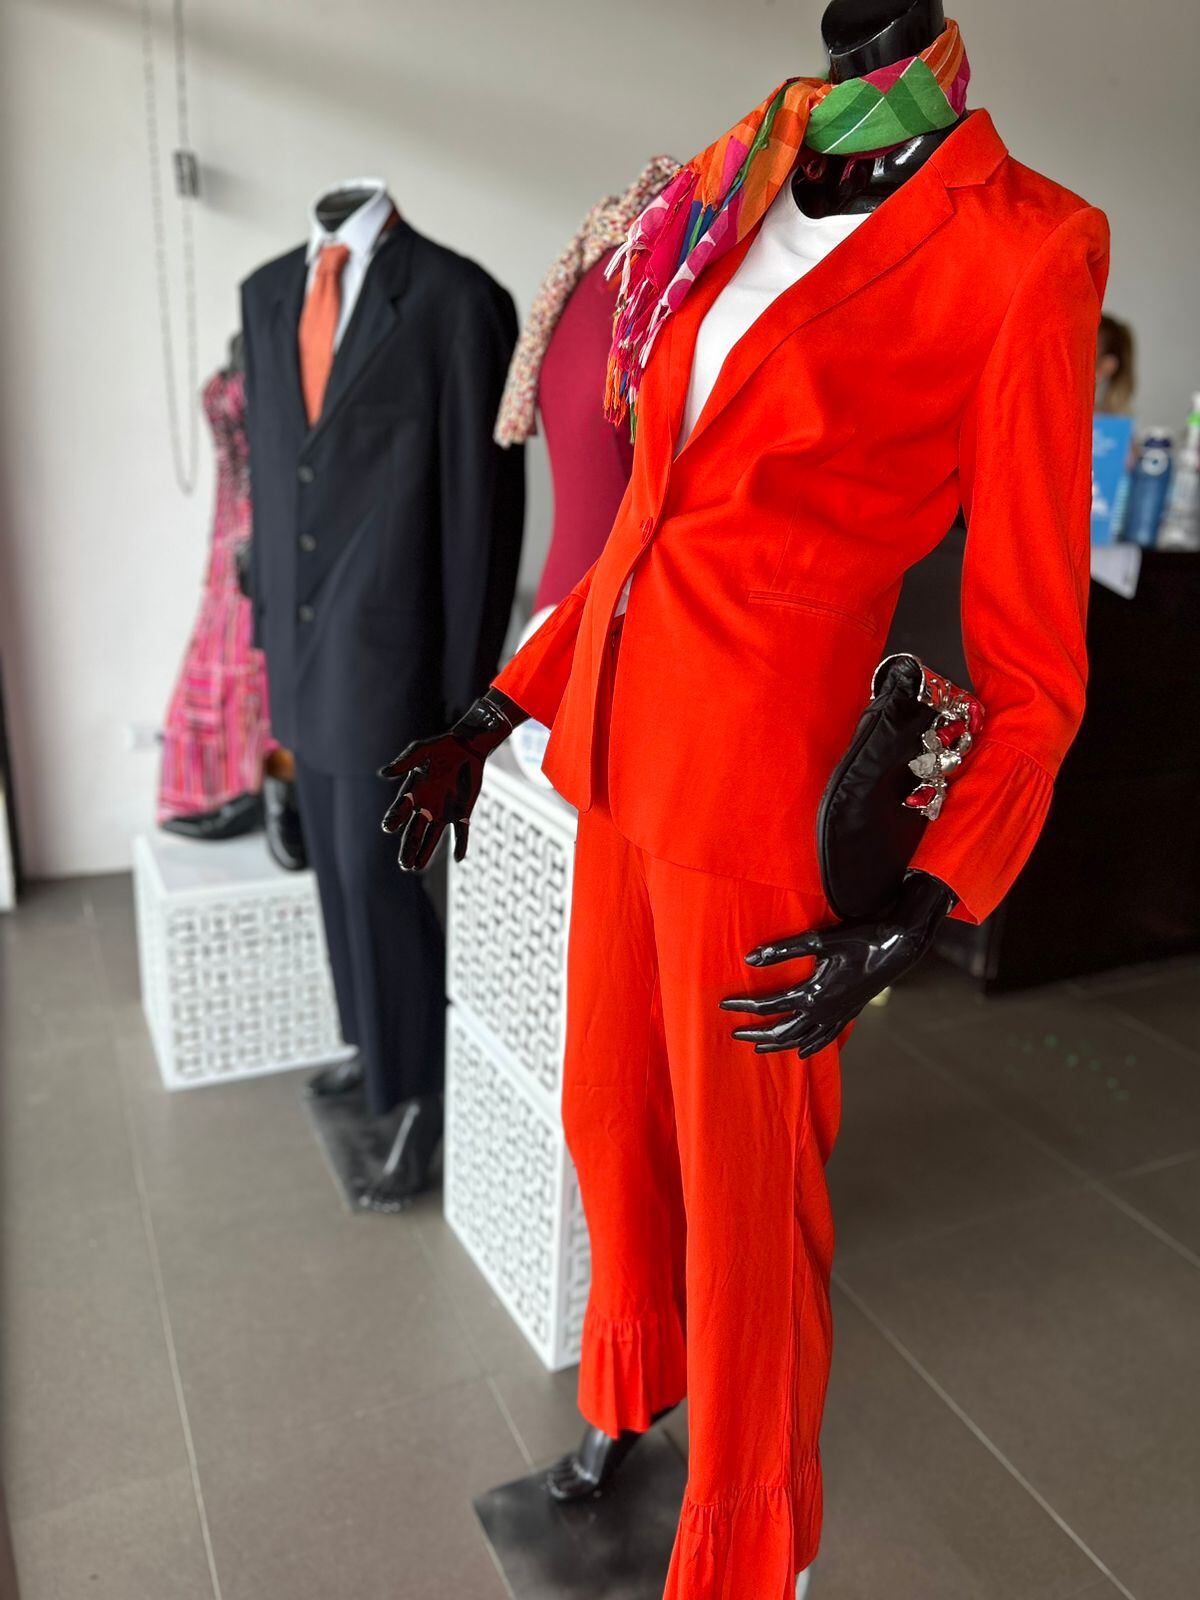 Las personas también pueden comprar trajes ejecutivos. Fotografía: Damas Israelitas